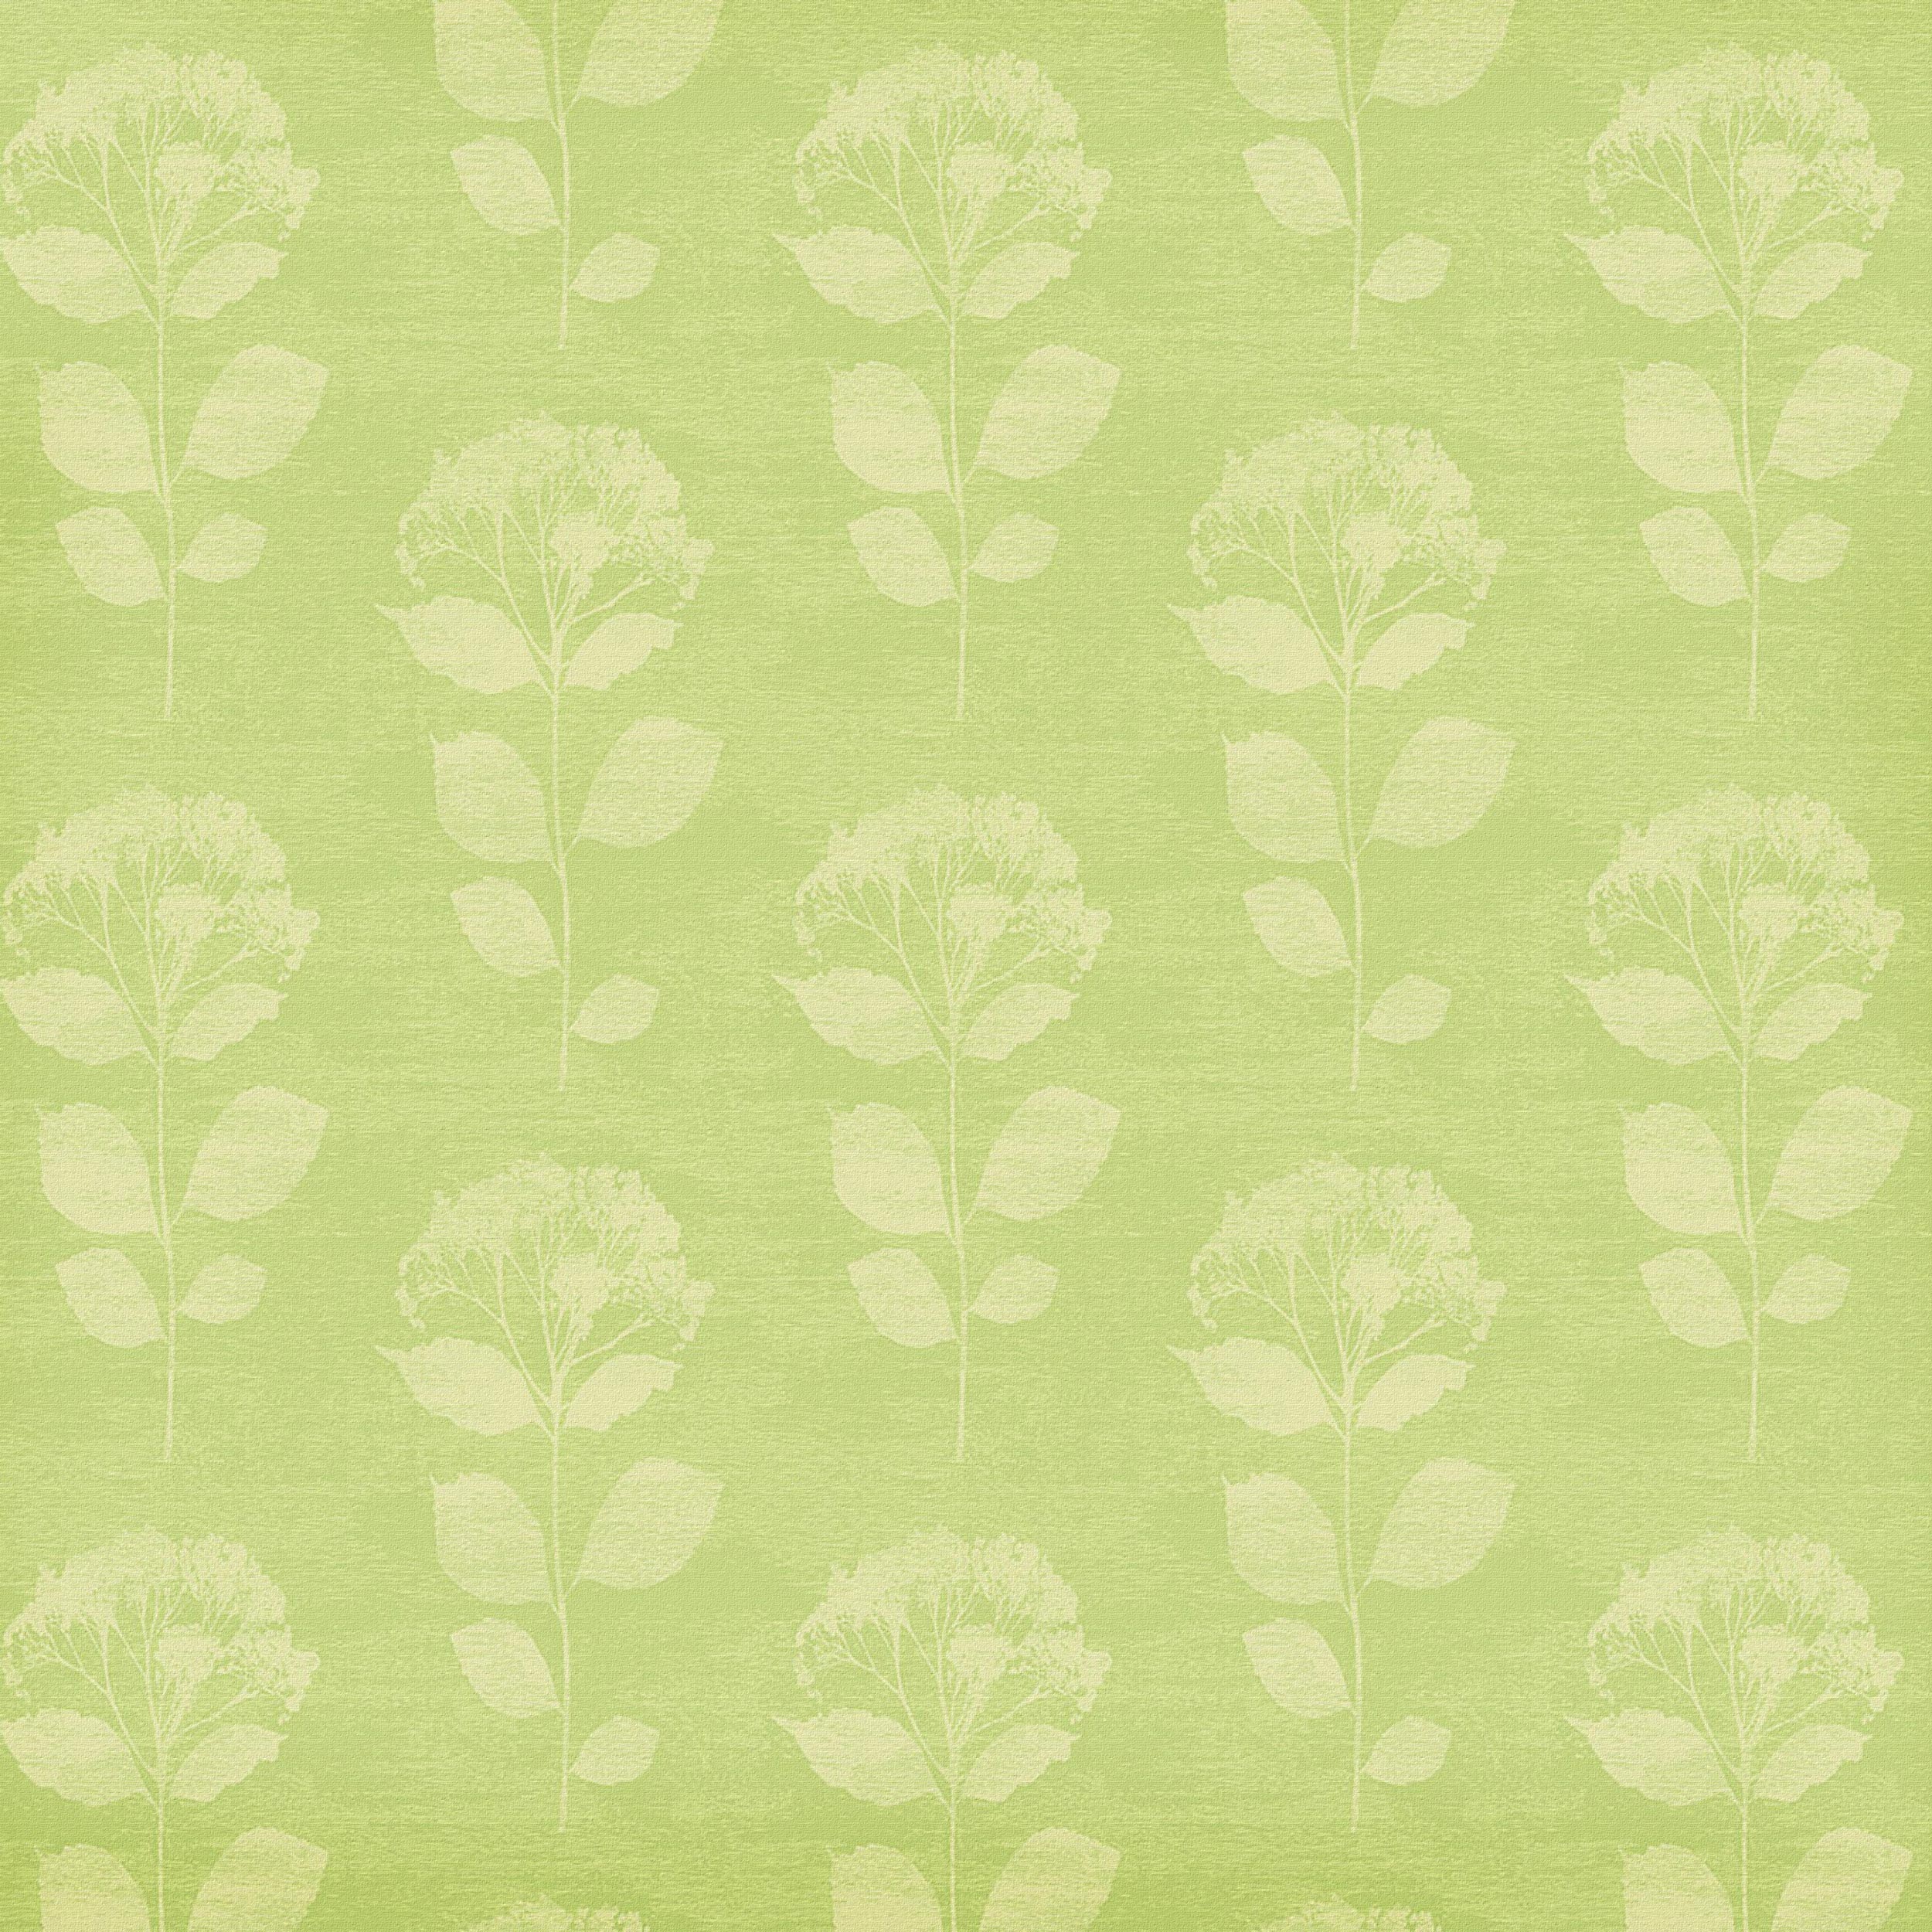 緑色の花のイラスト フリー素材 背景 壁紙no 176 緑 茎葉 布生地